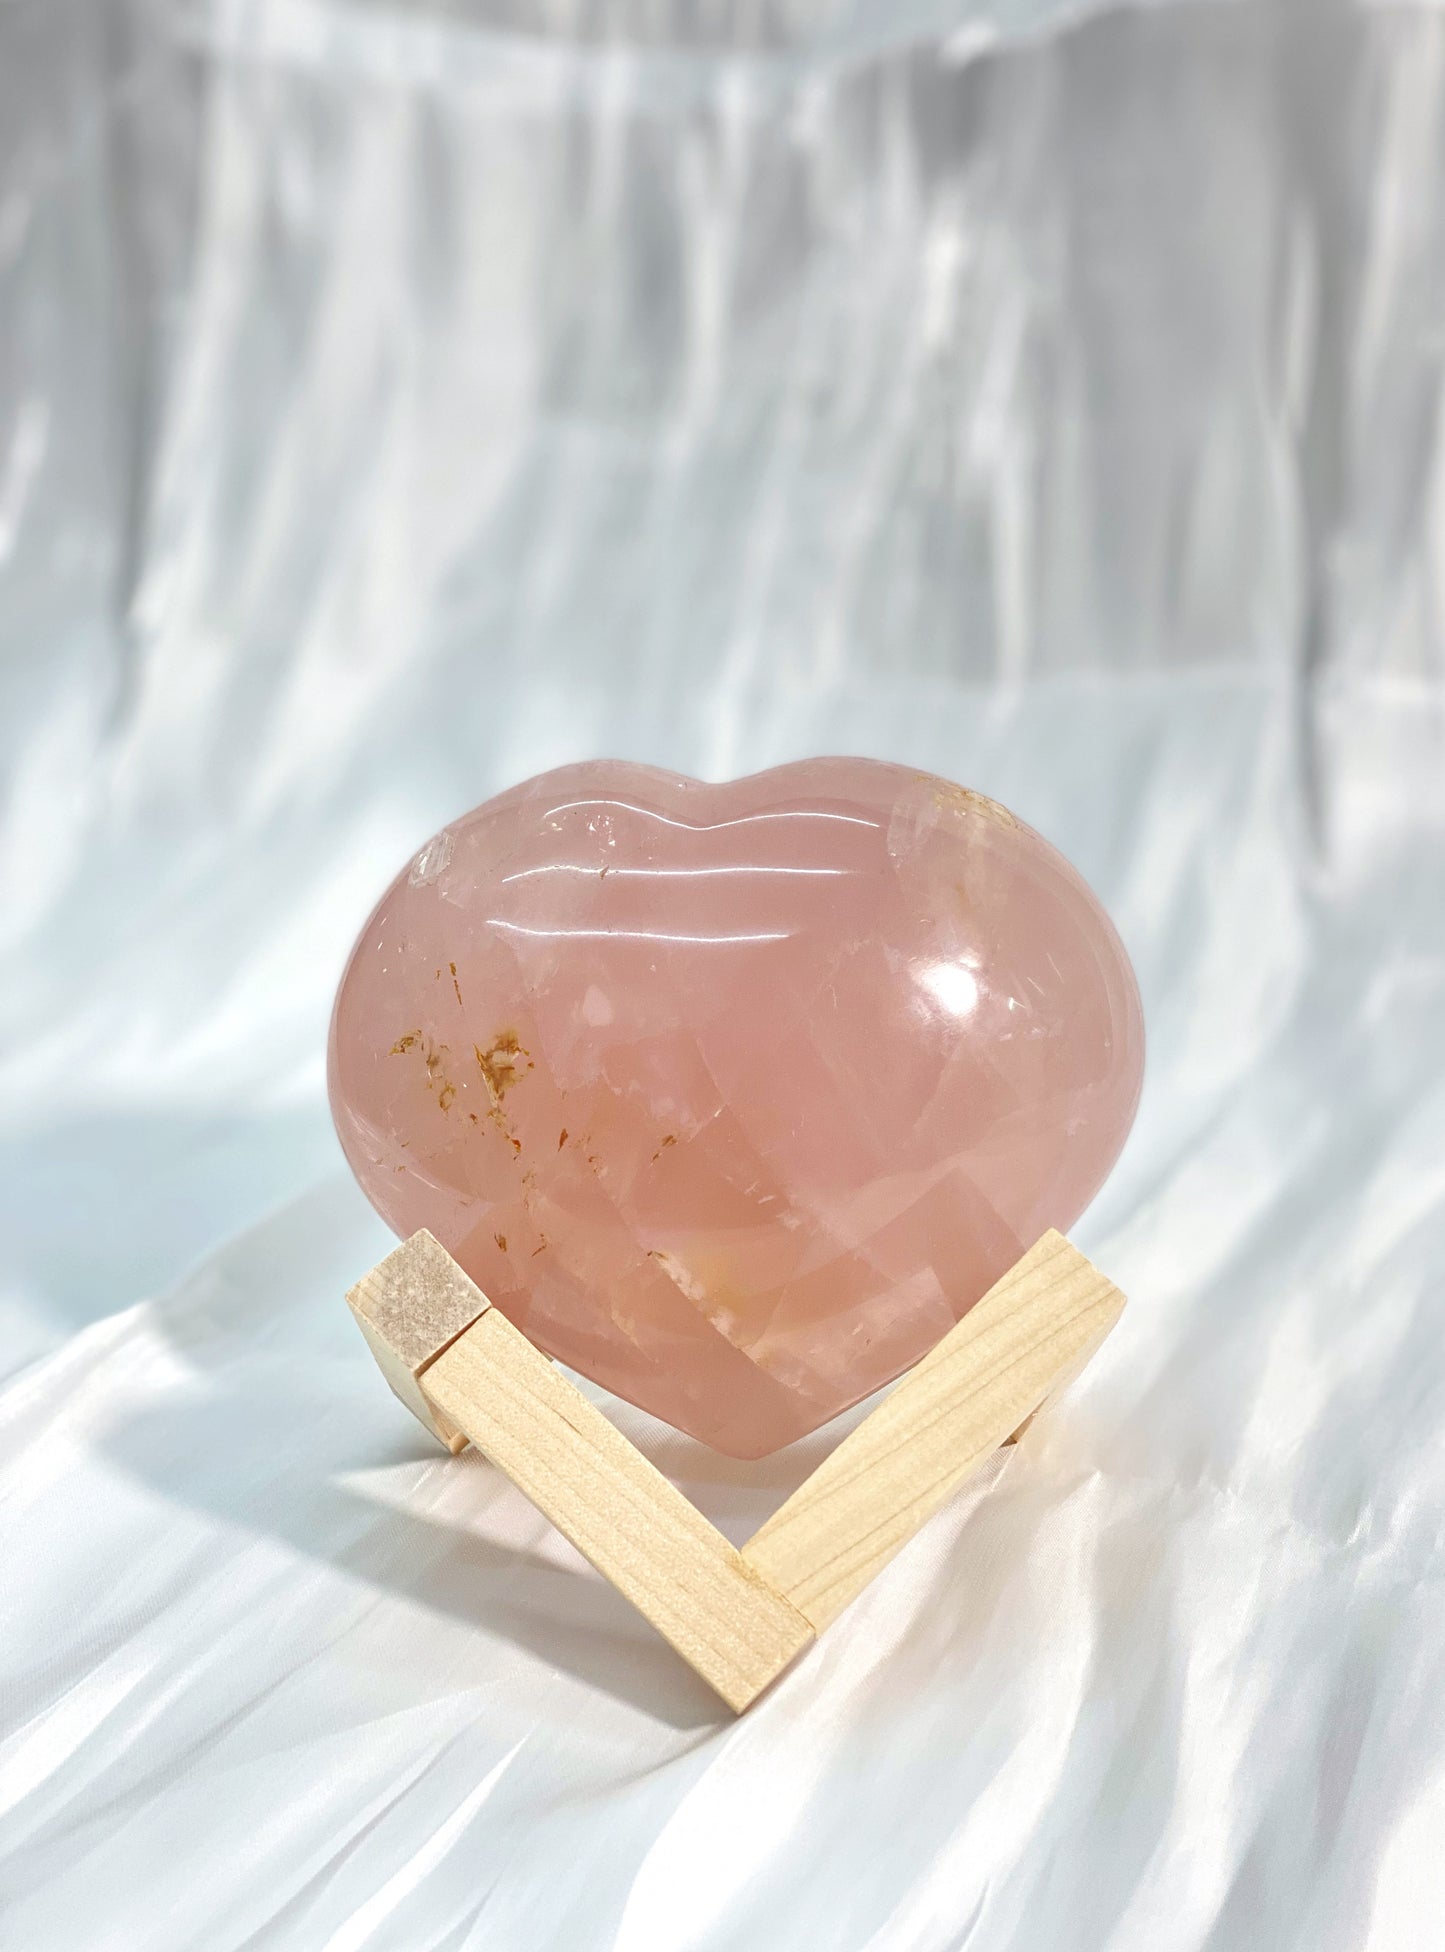 心型粉晶 Heart Rose Quartz 985 grams